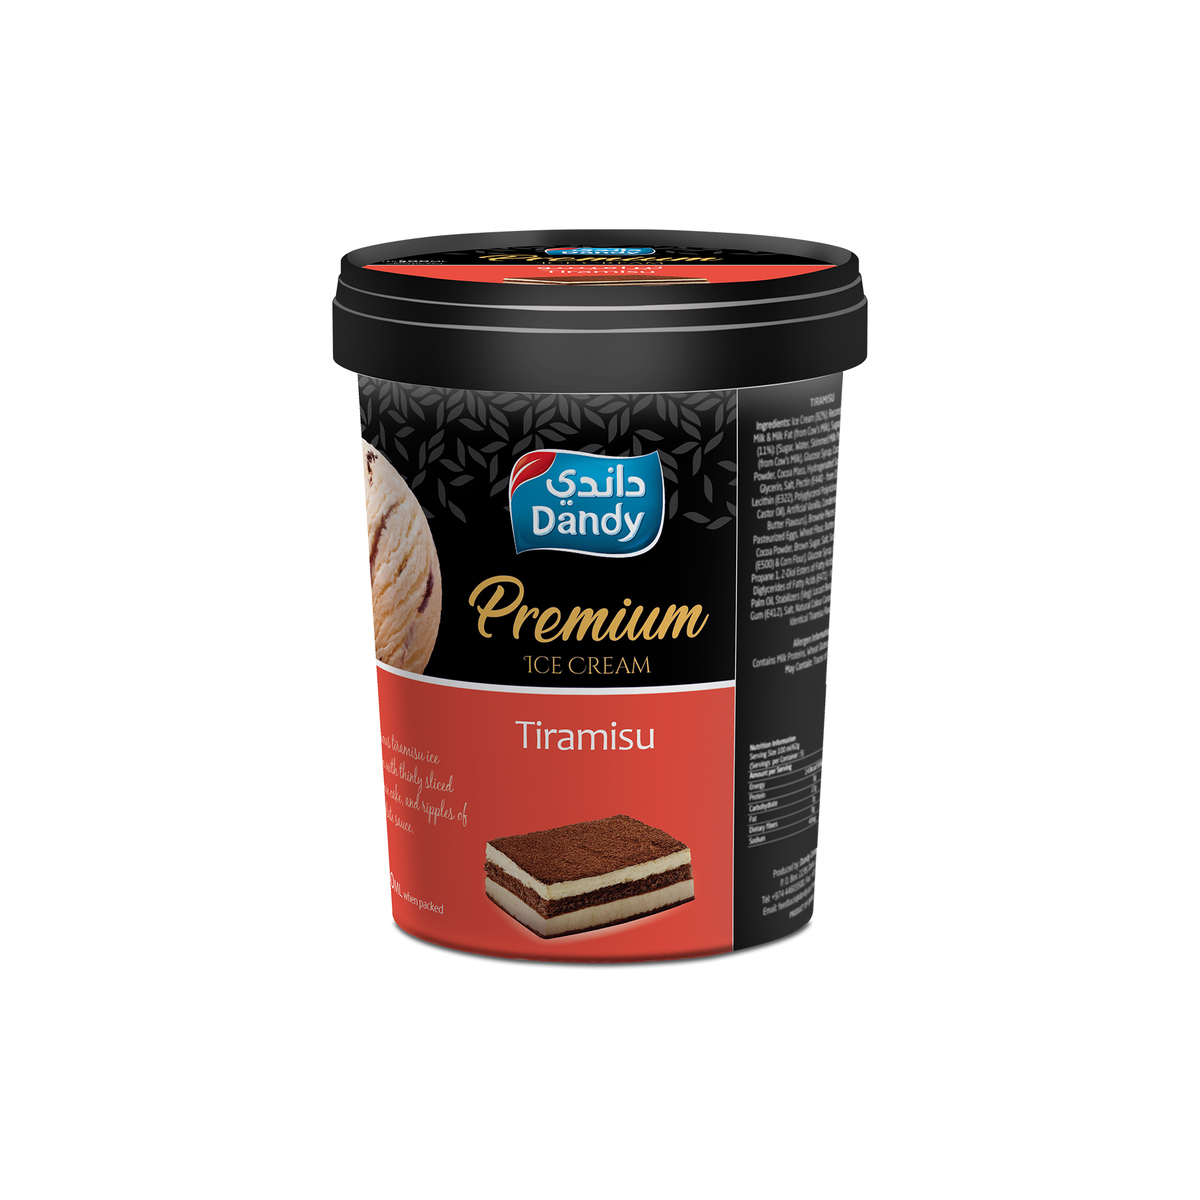 Dandy Premium Ice Cream Tiramisu 500ml